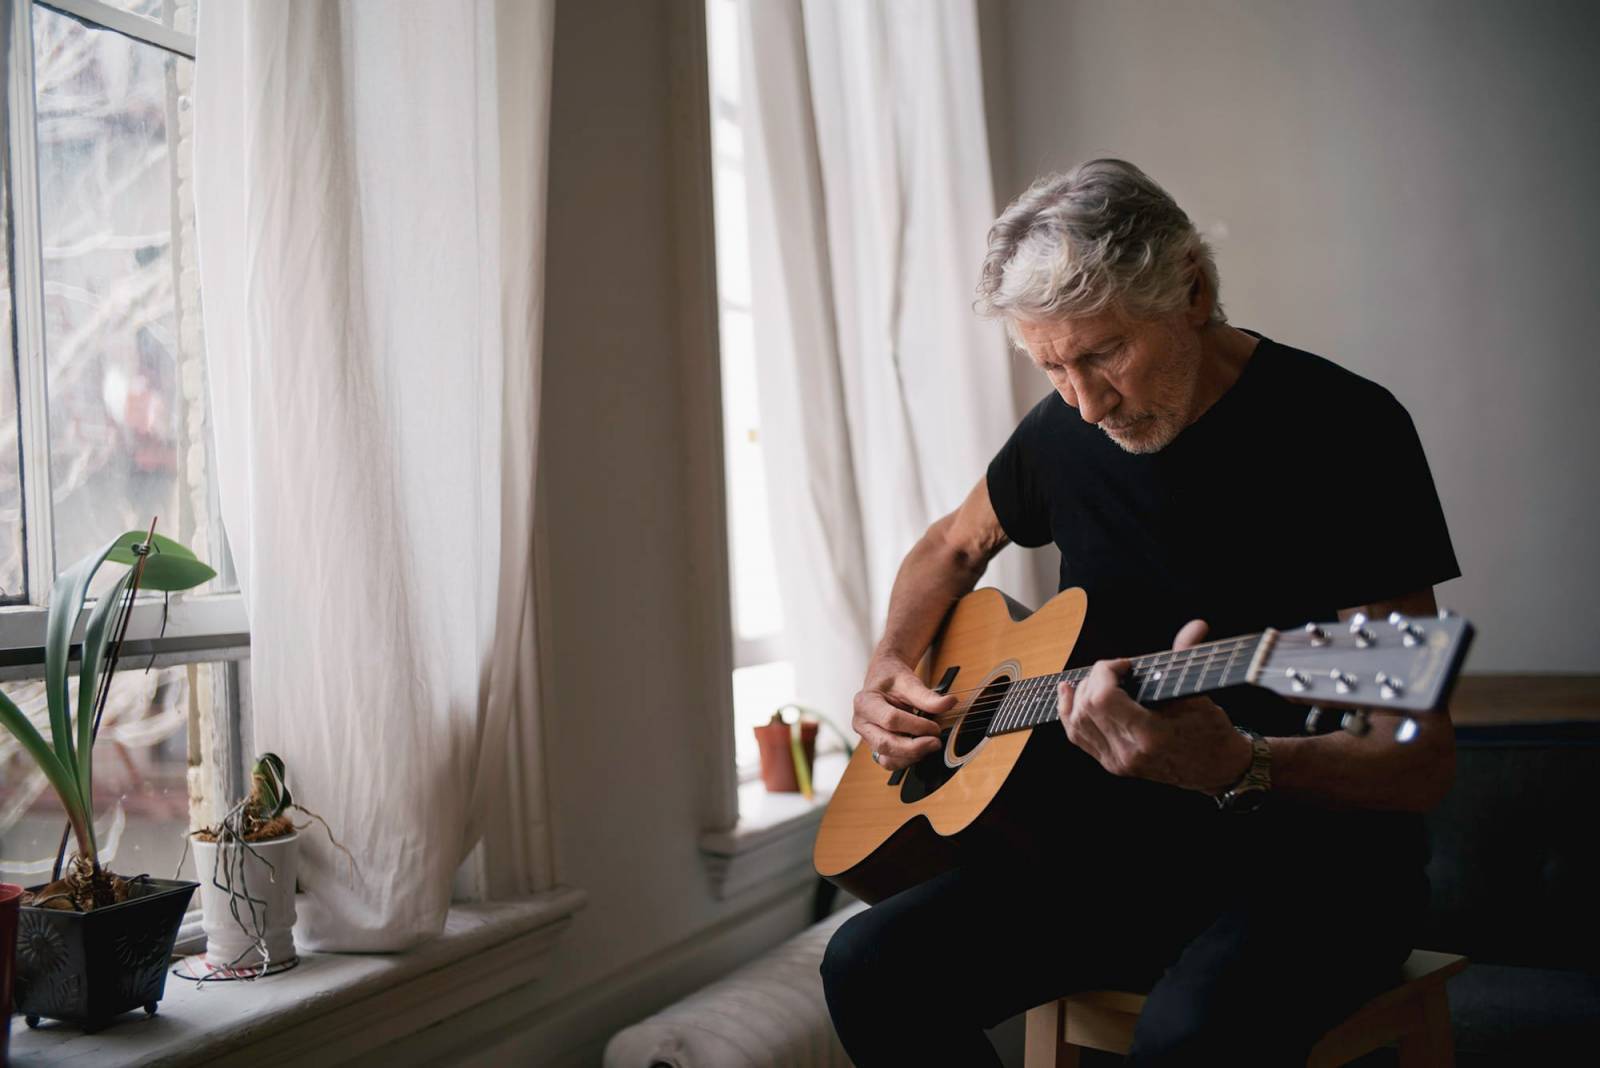 Roger Waters může ve Frankfurtu koncertovat. Soud zrušil zákaz vydaný kvůli muzikantovým postojům